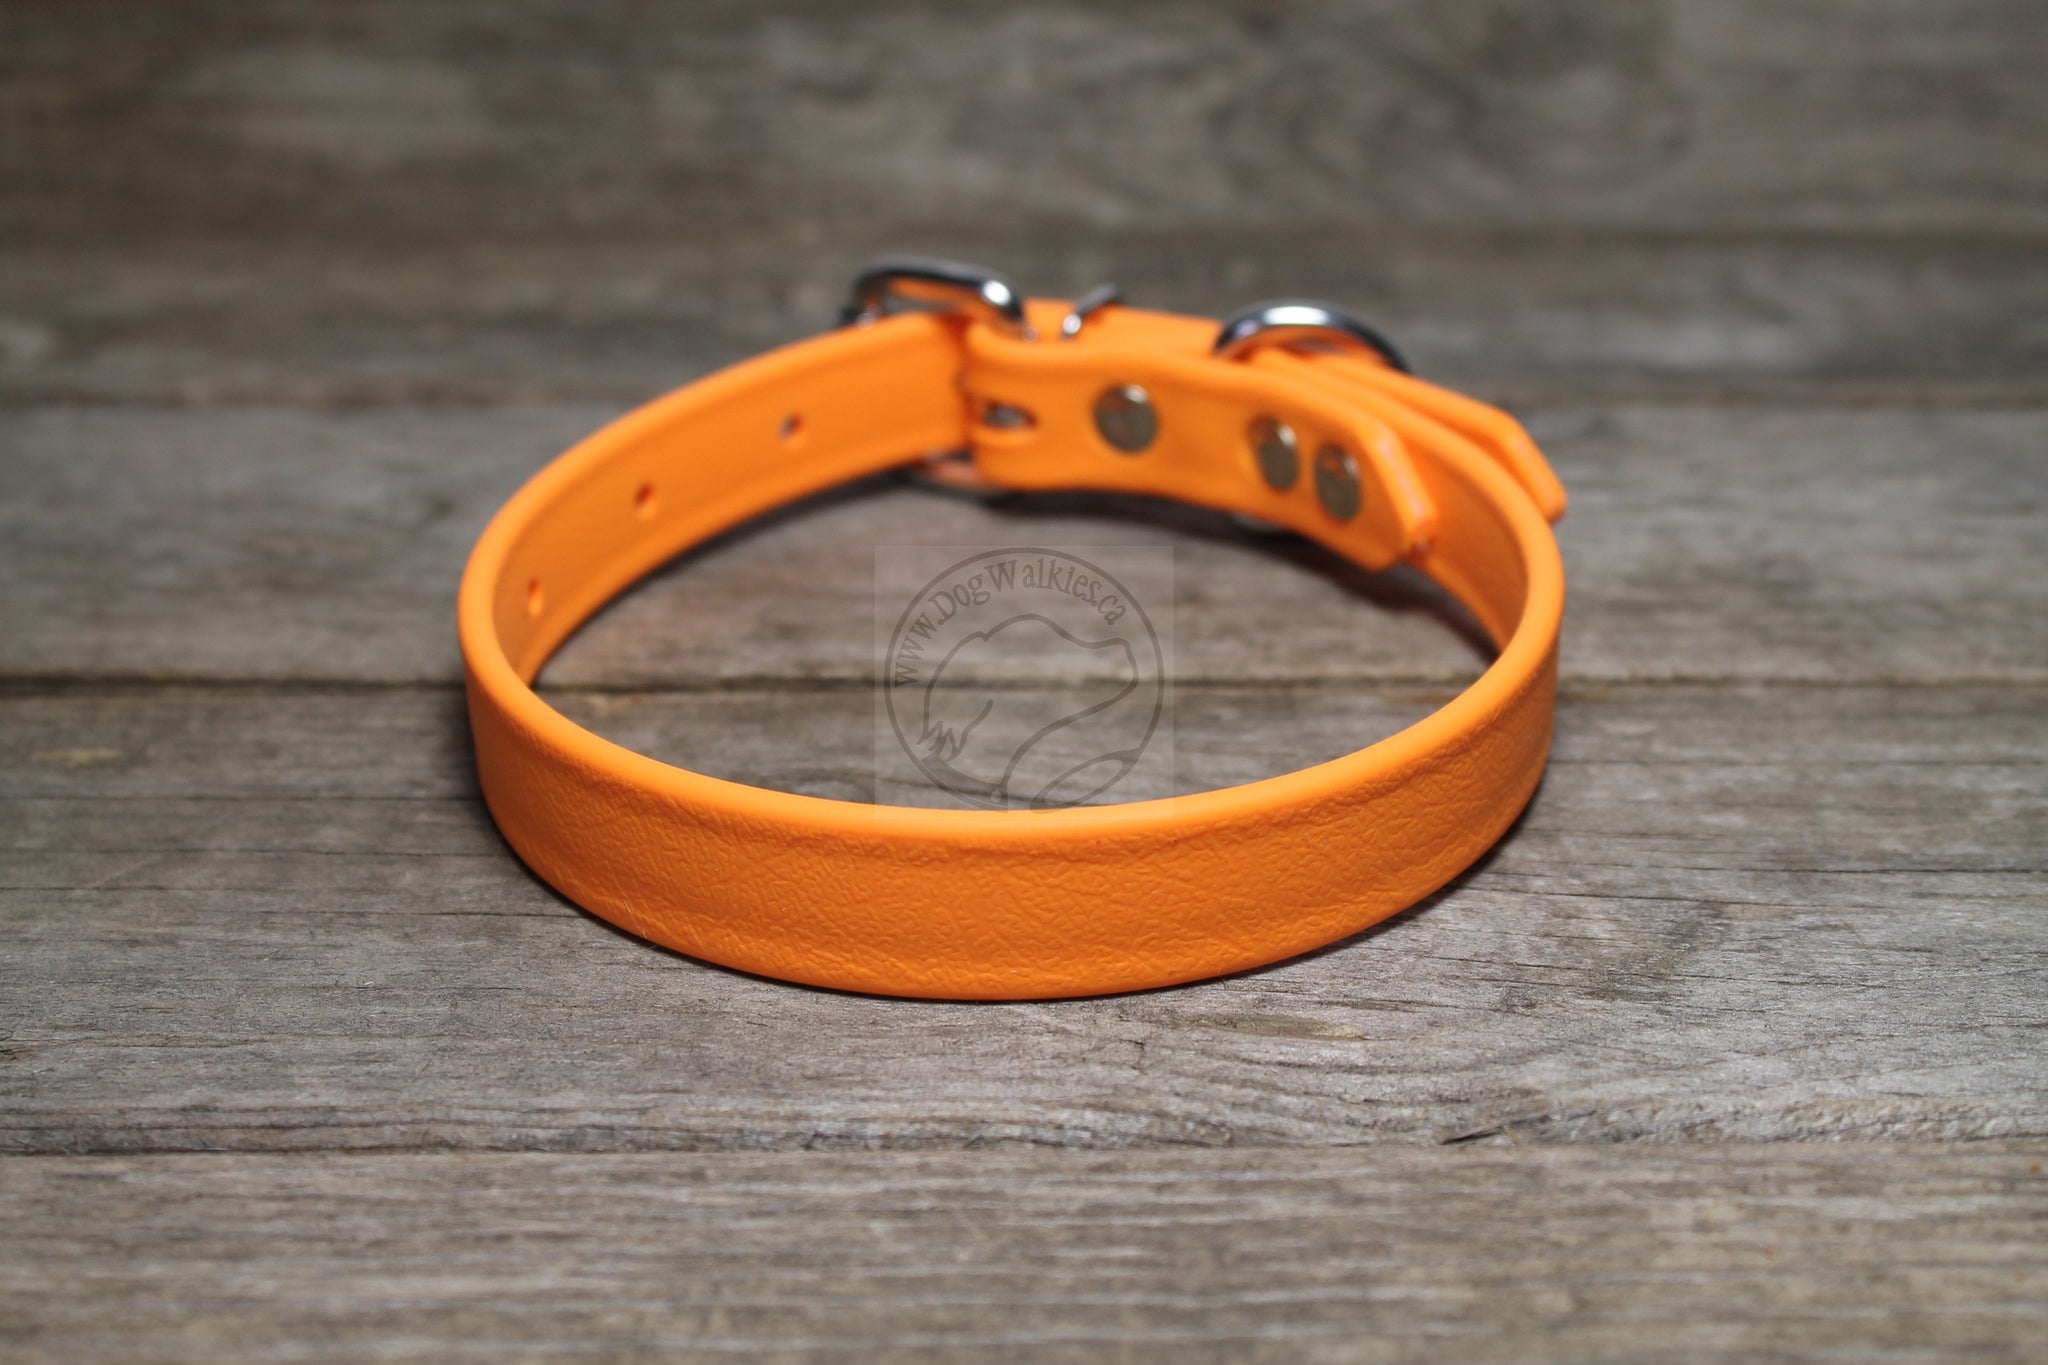 Bright Pumpkin Orange Biothane Dog Collar - 3/4" (20mm) wide